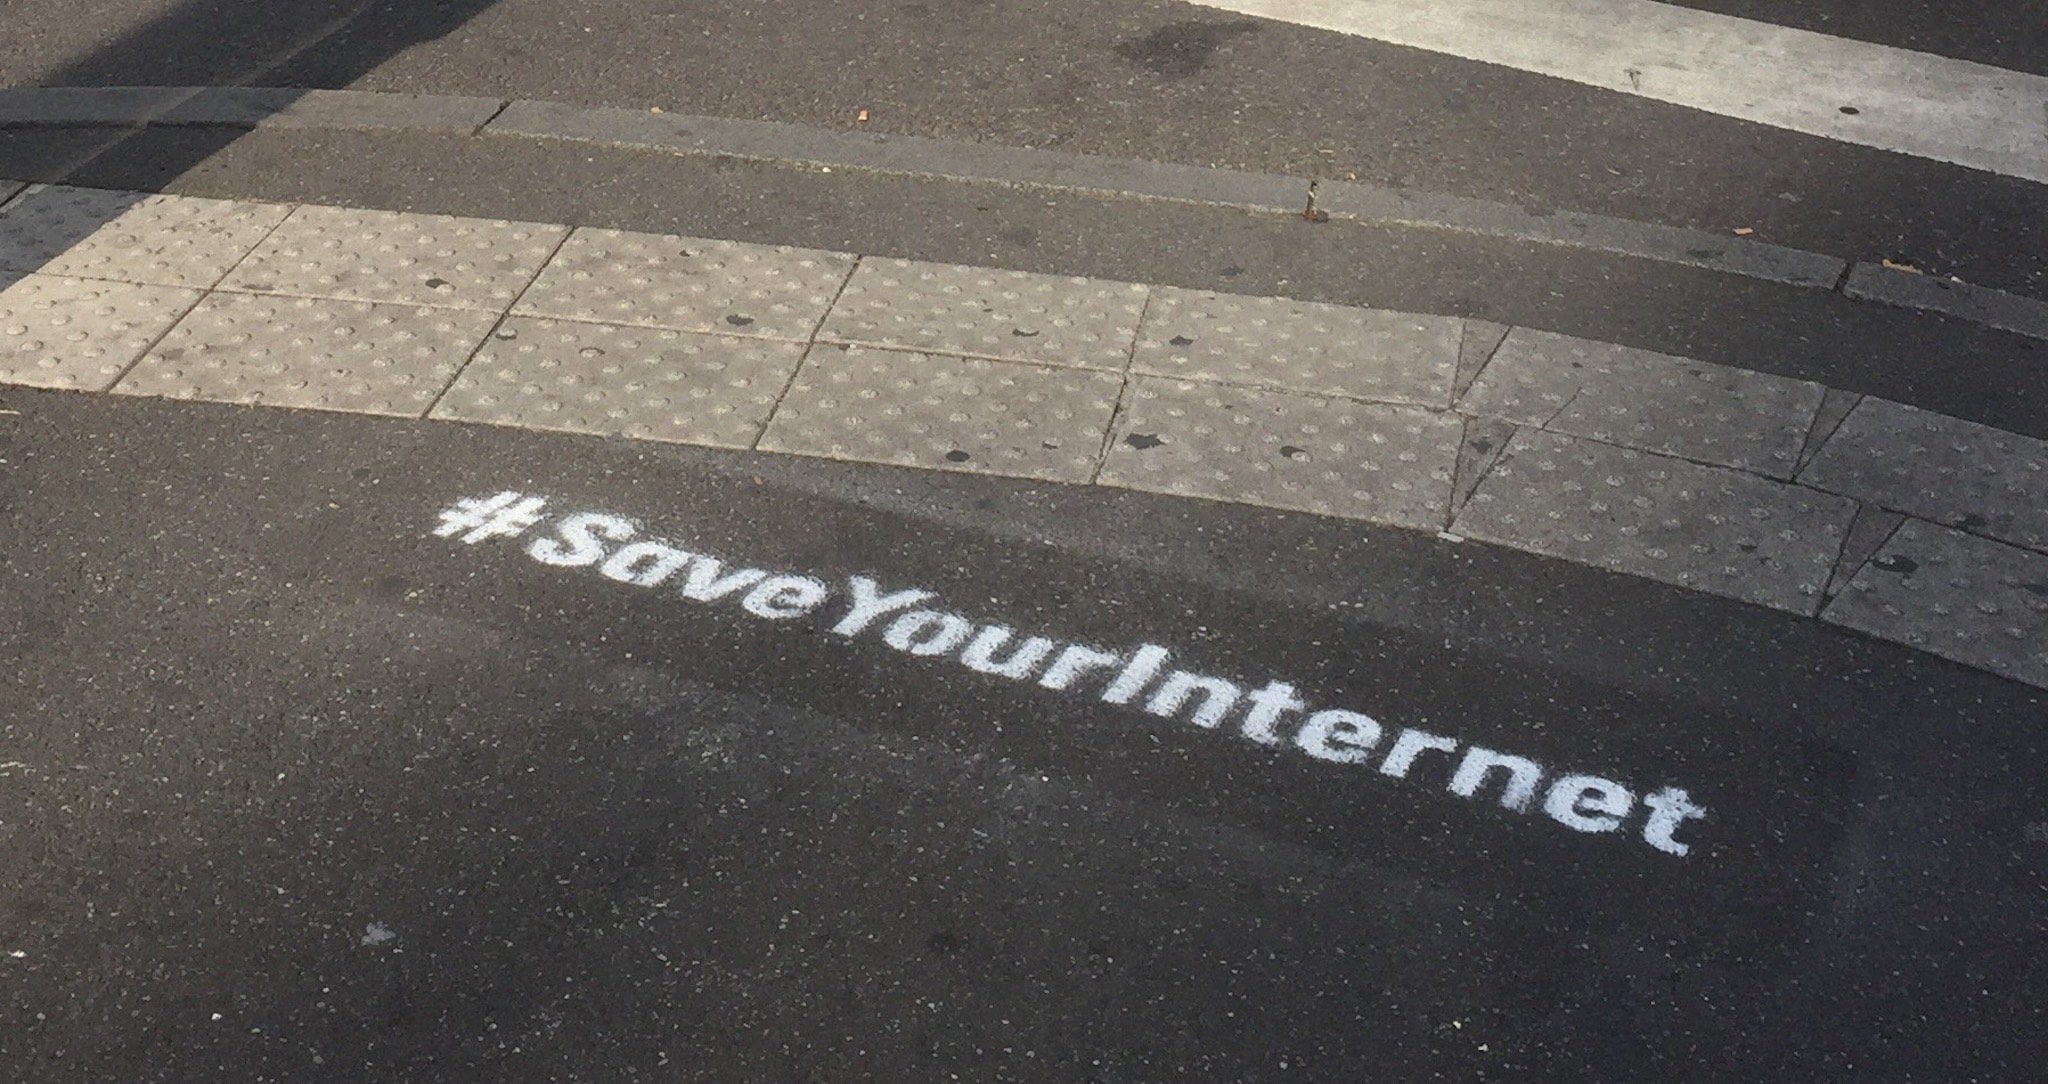 C’est quoi ces tags #SaveYourInternet partout à Strasbourg ?